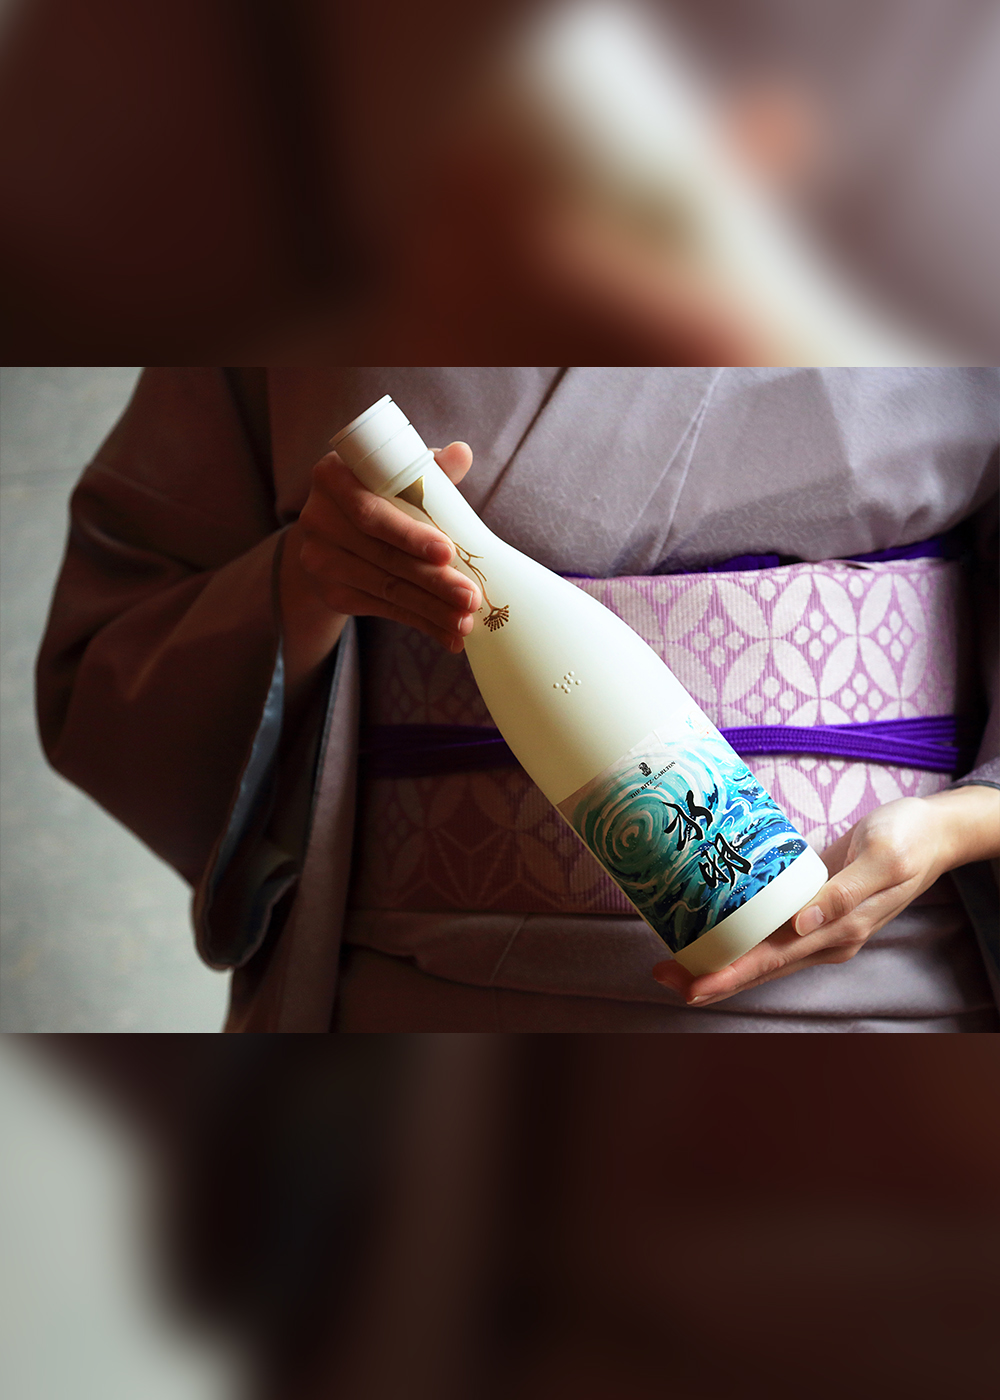 「ザ・リッツ・カールトン京都」が本気で米づくりから手がけた日本酒とは